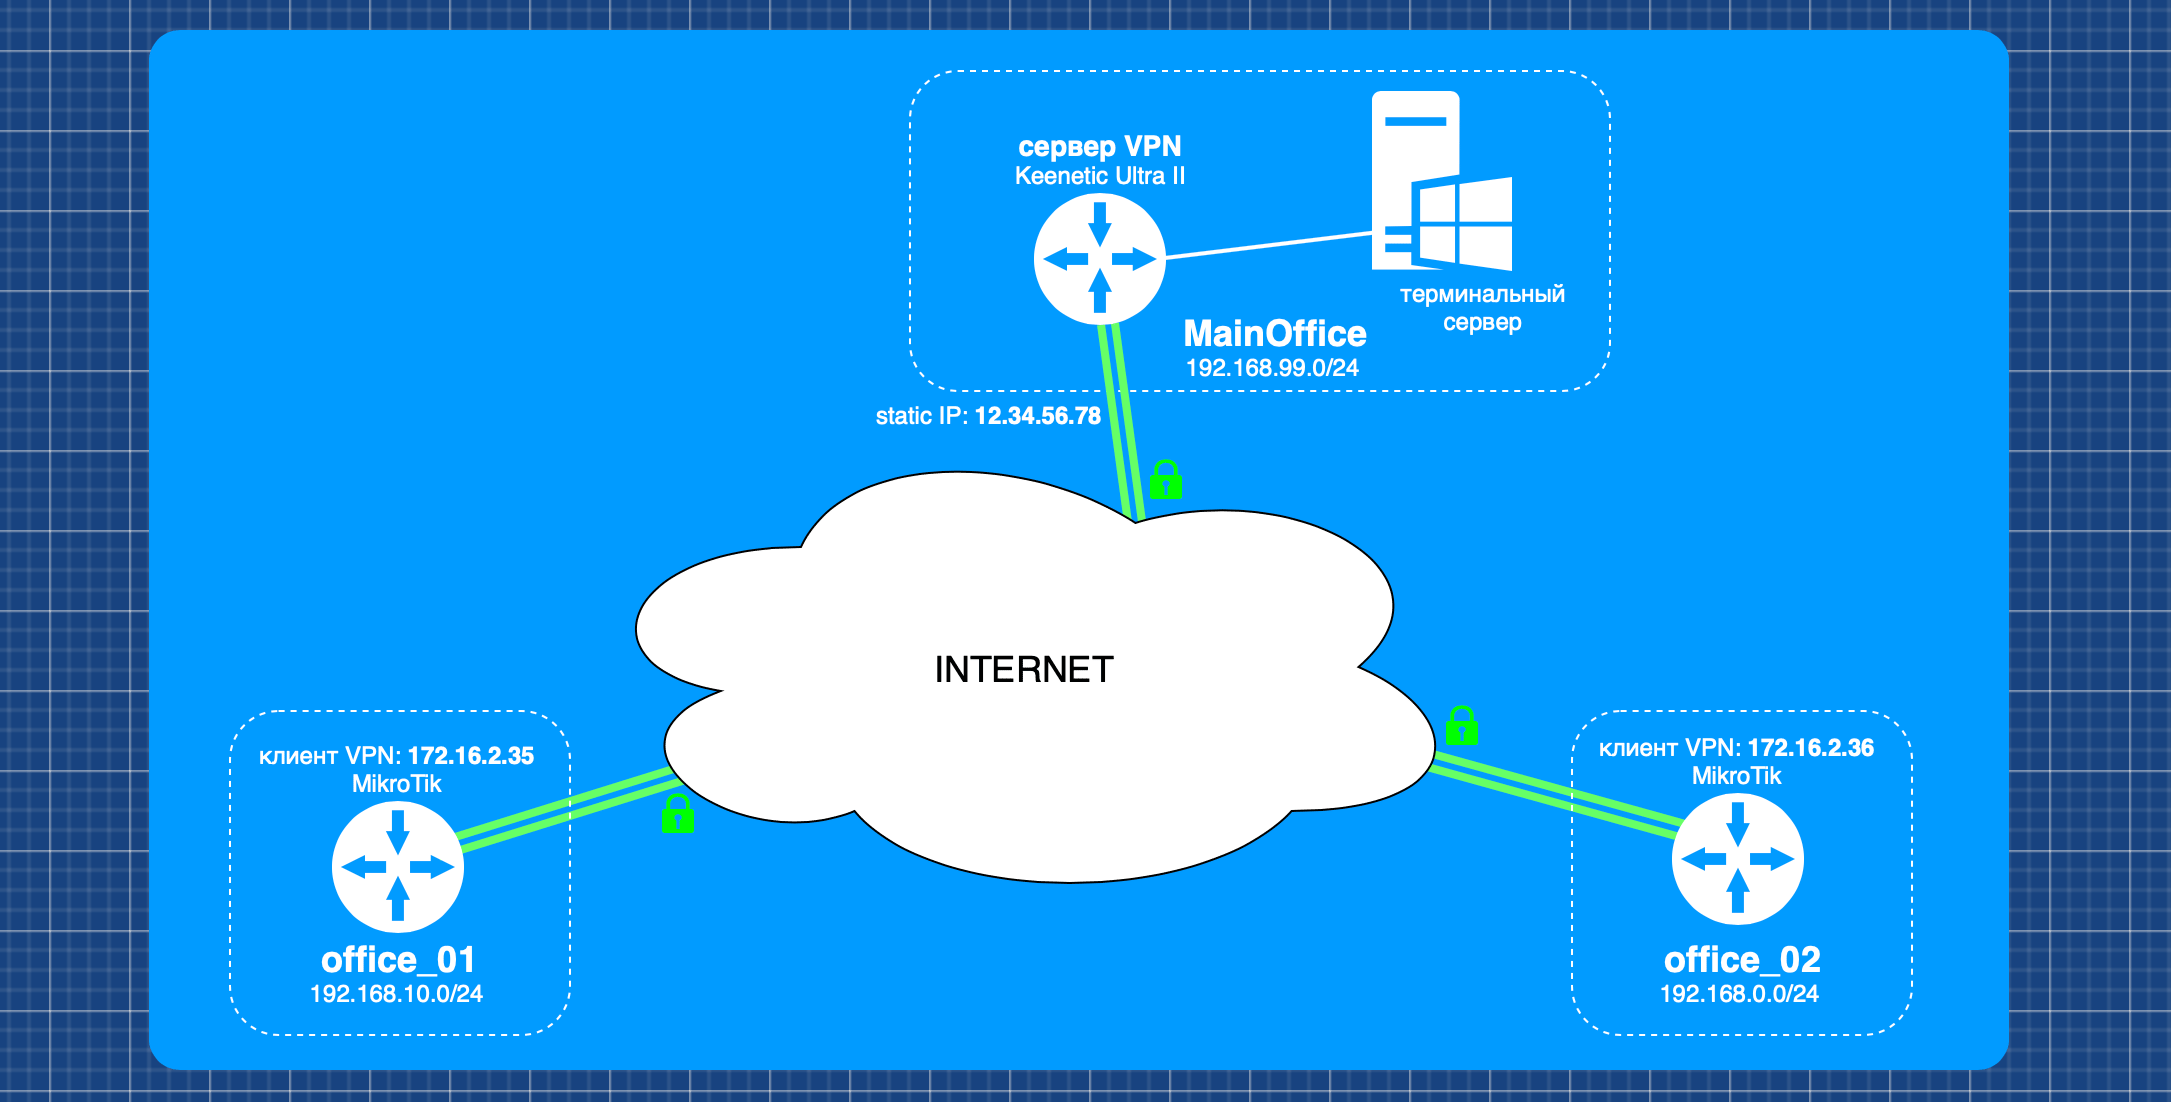 Объединение сетей с помощью L2TP/IPsec на Mikrotik и Keenetic Ultra II